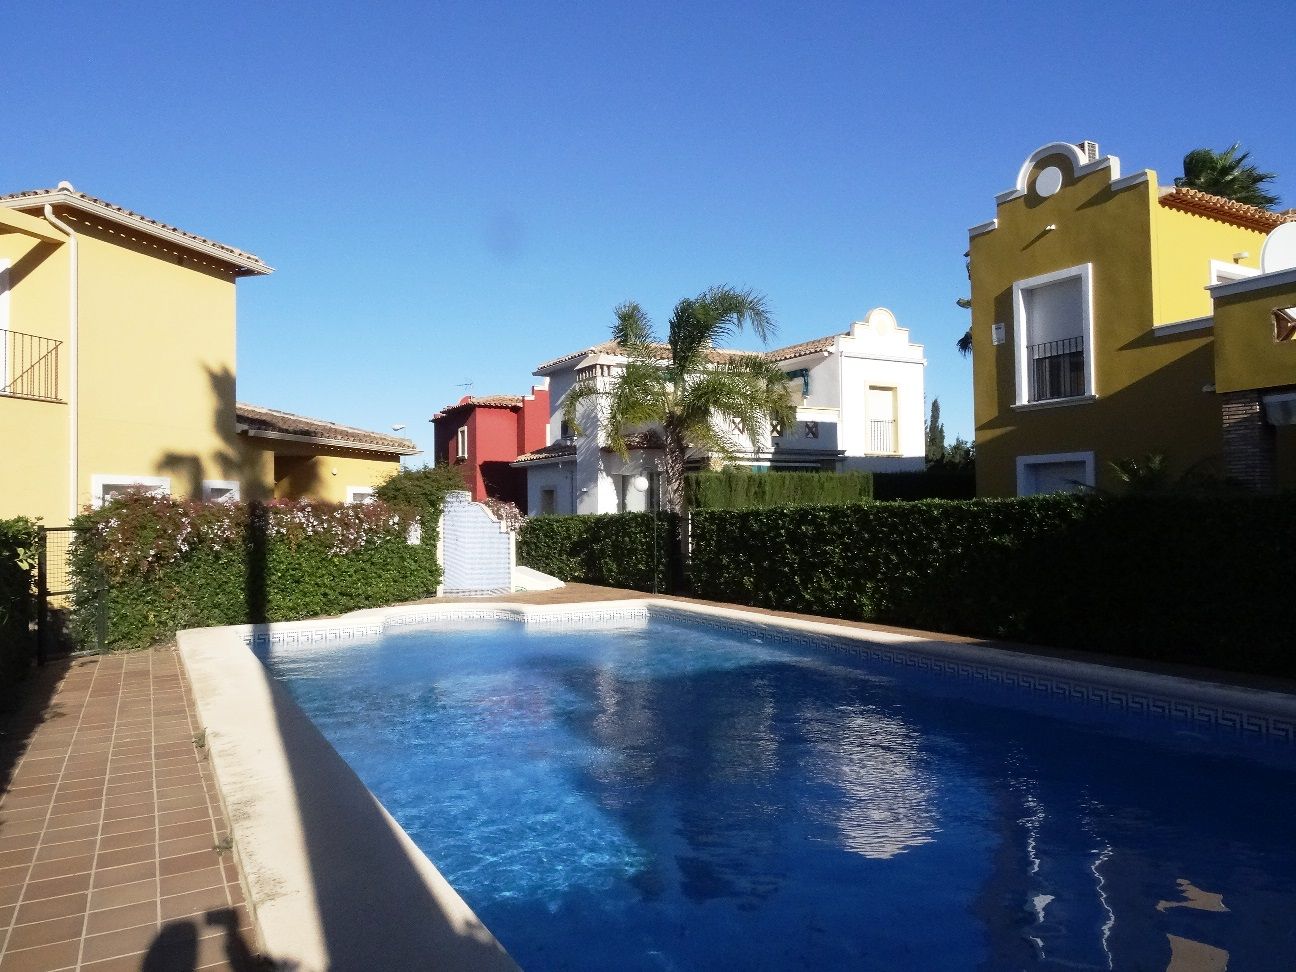 thumb Villa in Urbanisation mit Garten und Pool in privilegierter Lage